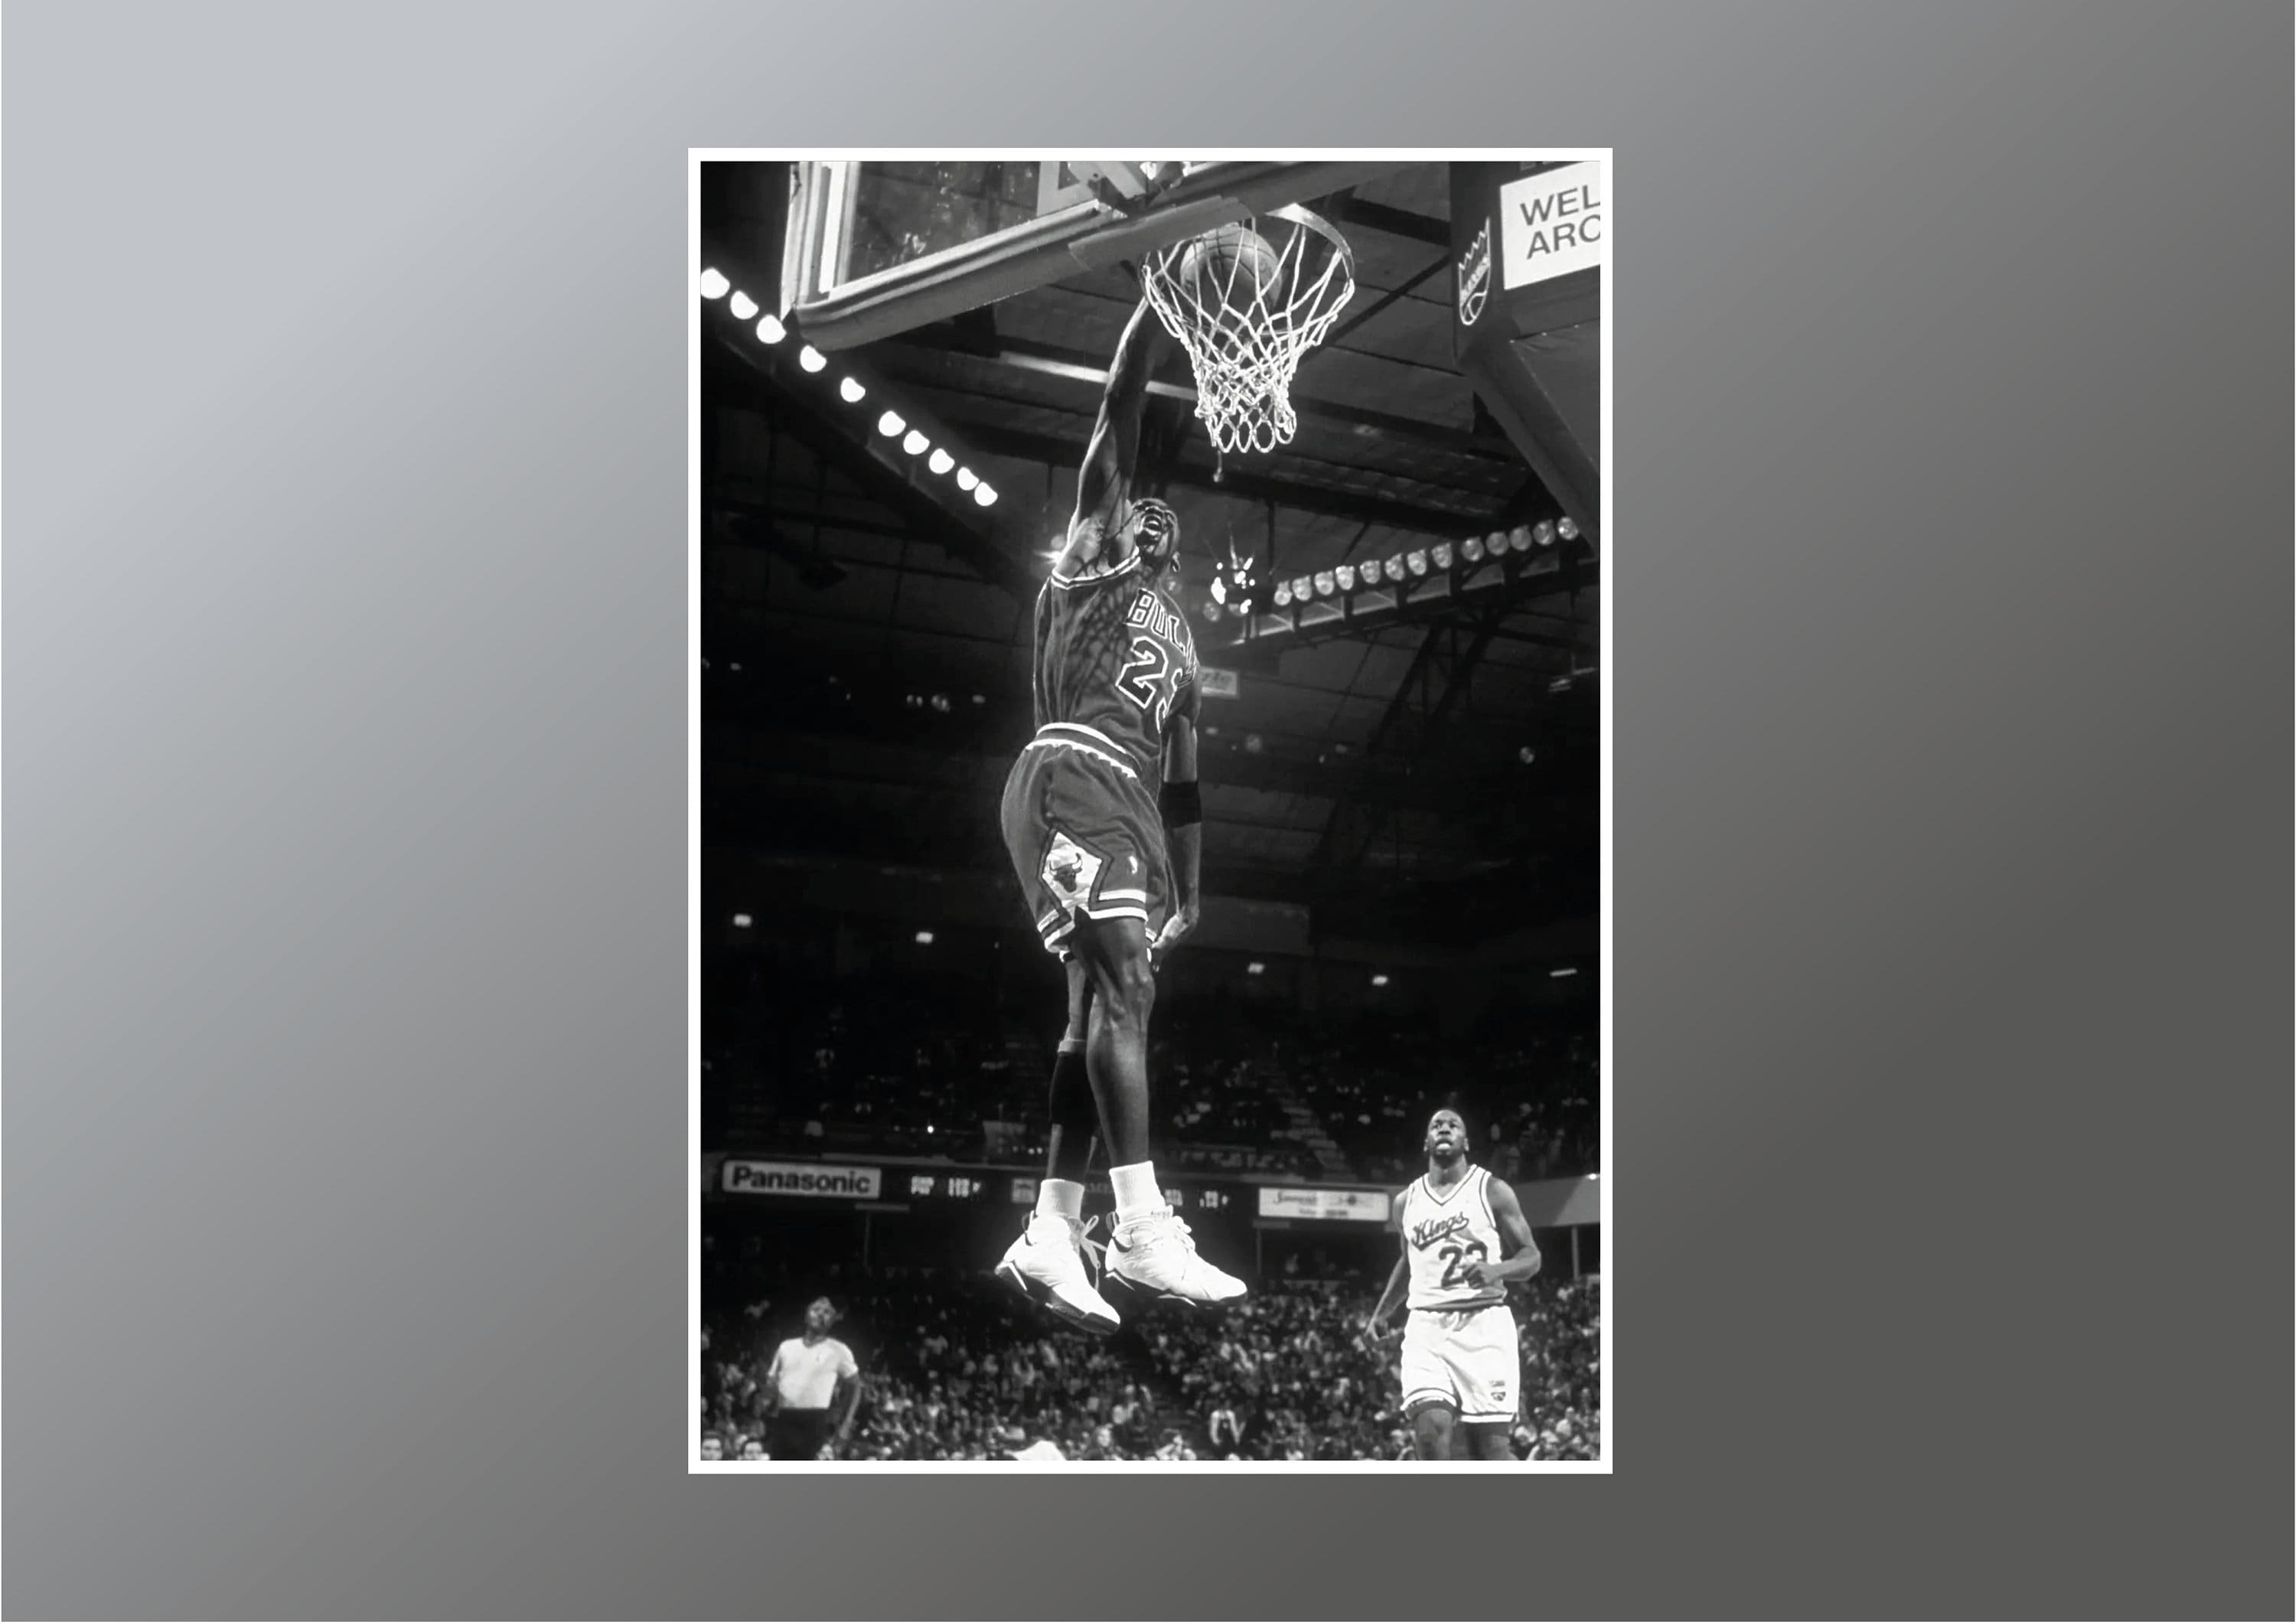 Michael Jordan N° 45 Poster  Michael jordan basketball, Michael